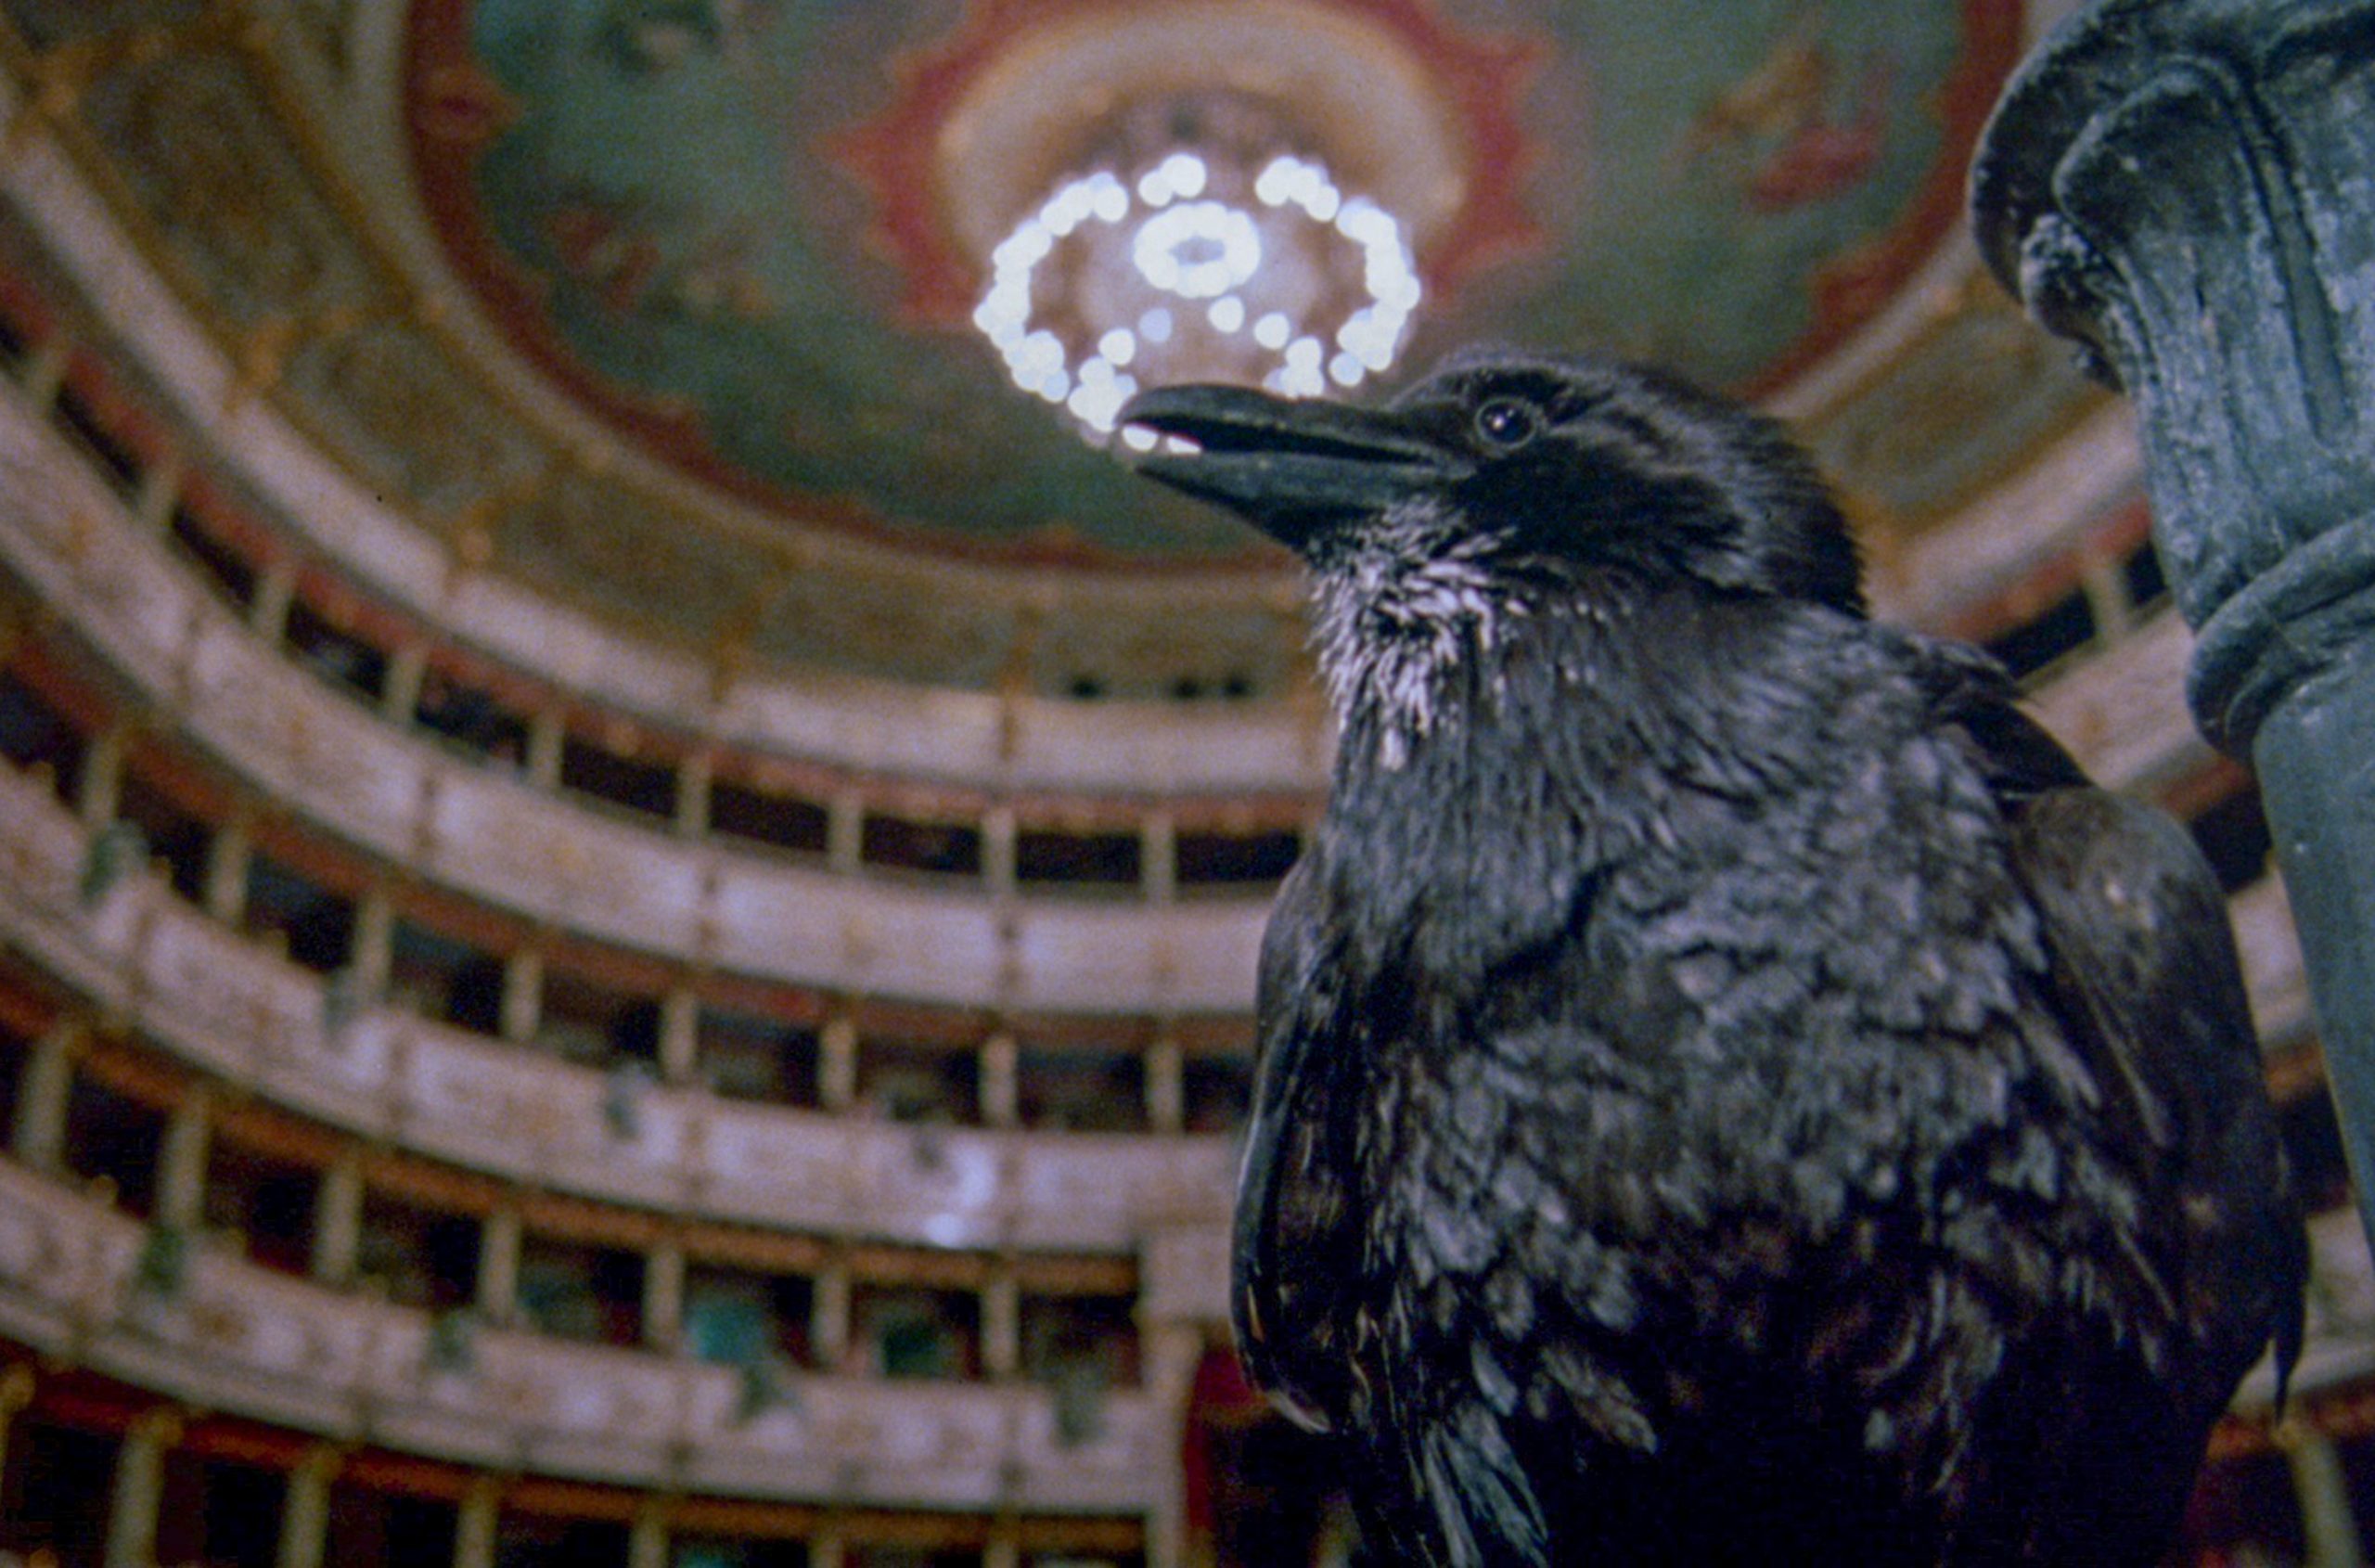 Terror in der Oper Opera Dario Argento